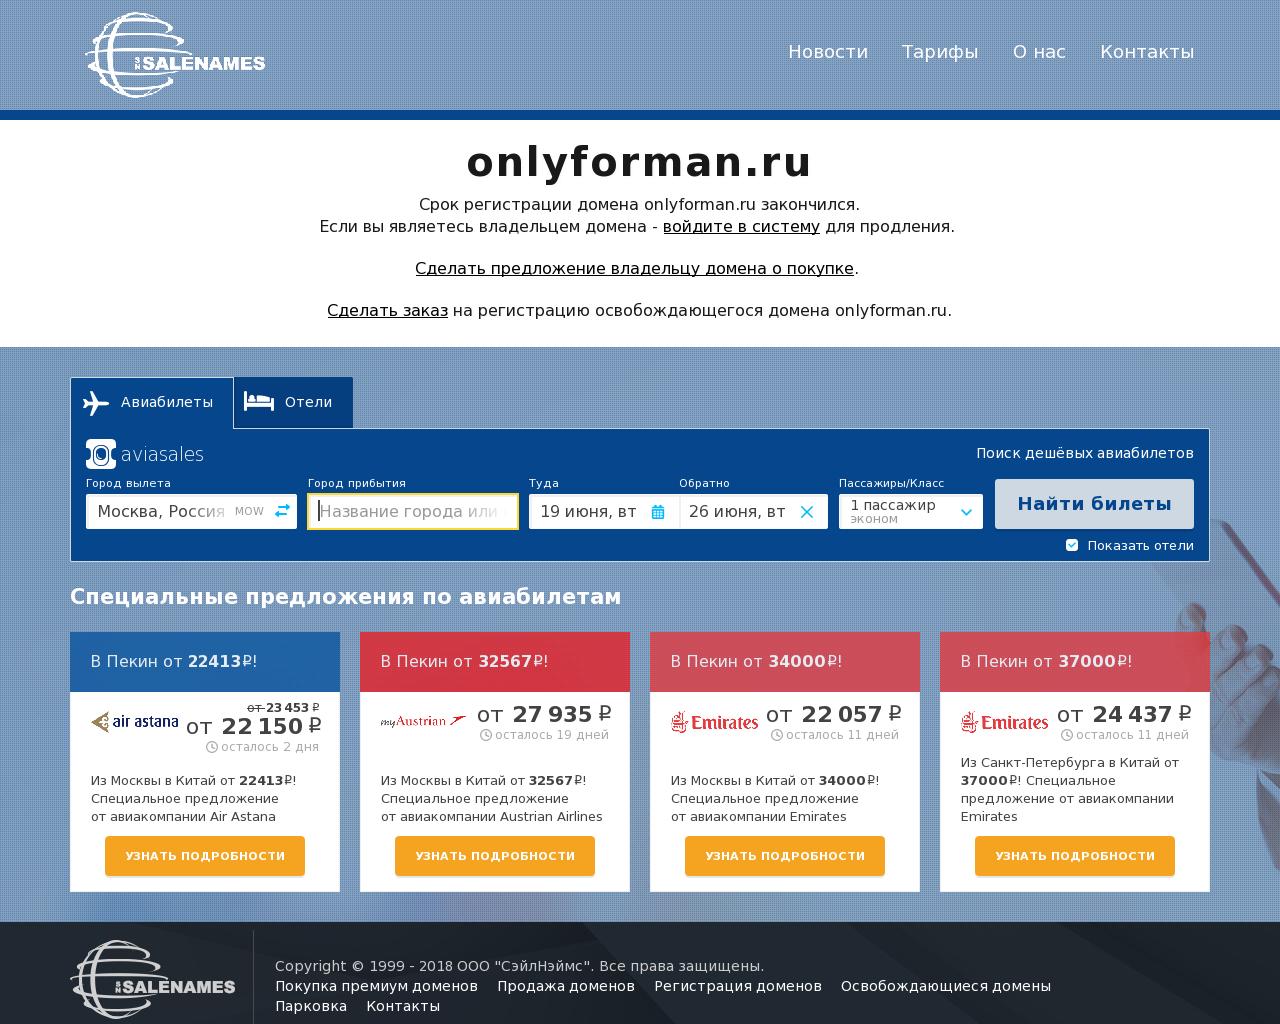 Изображение сайта onlyforman.ru в разрешении 1280x1024